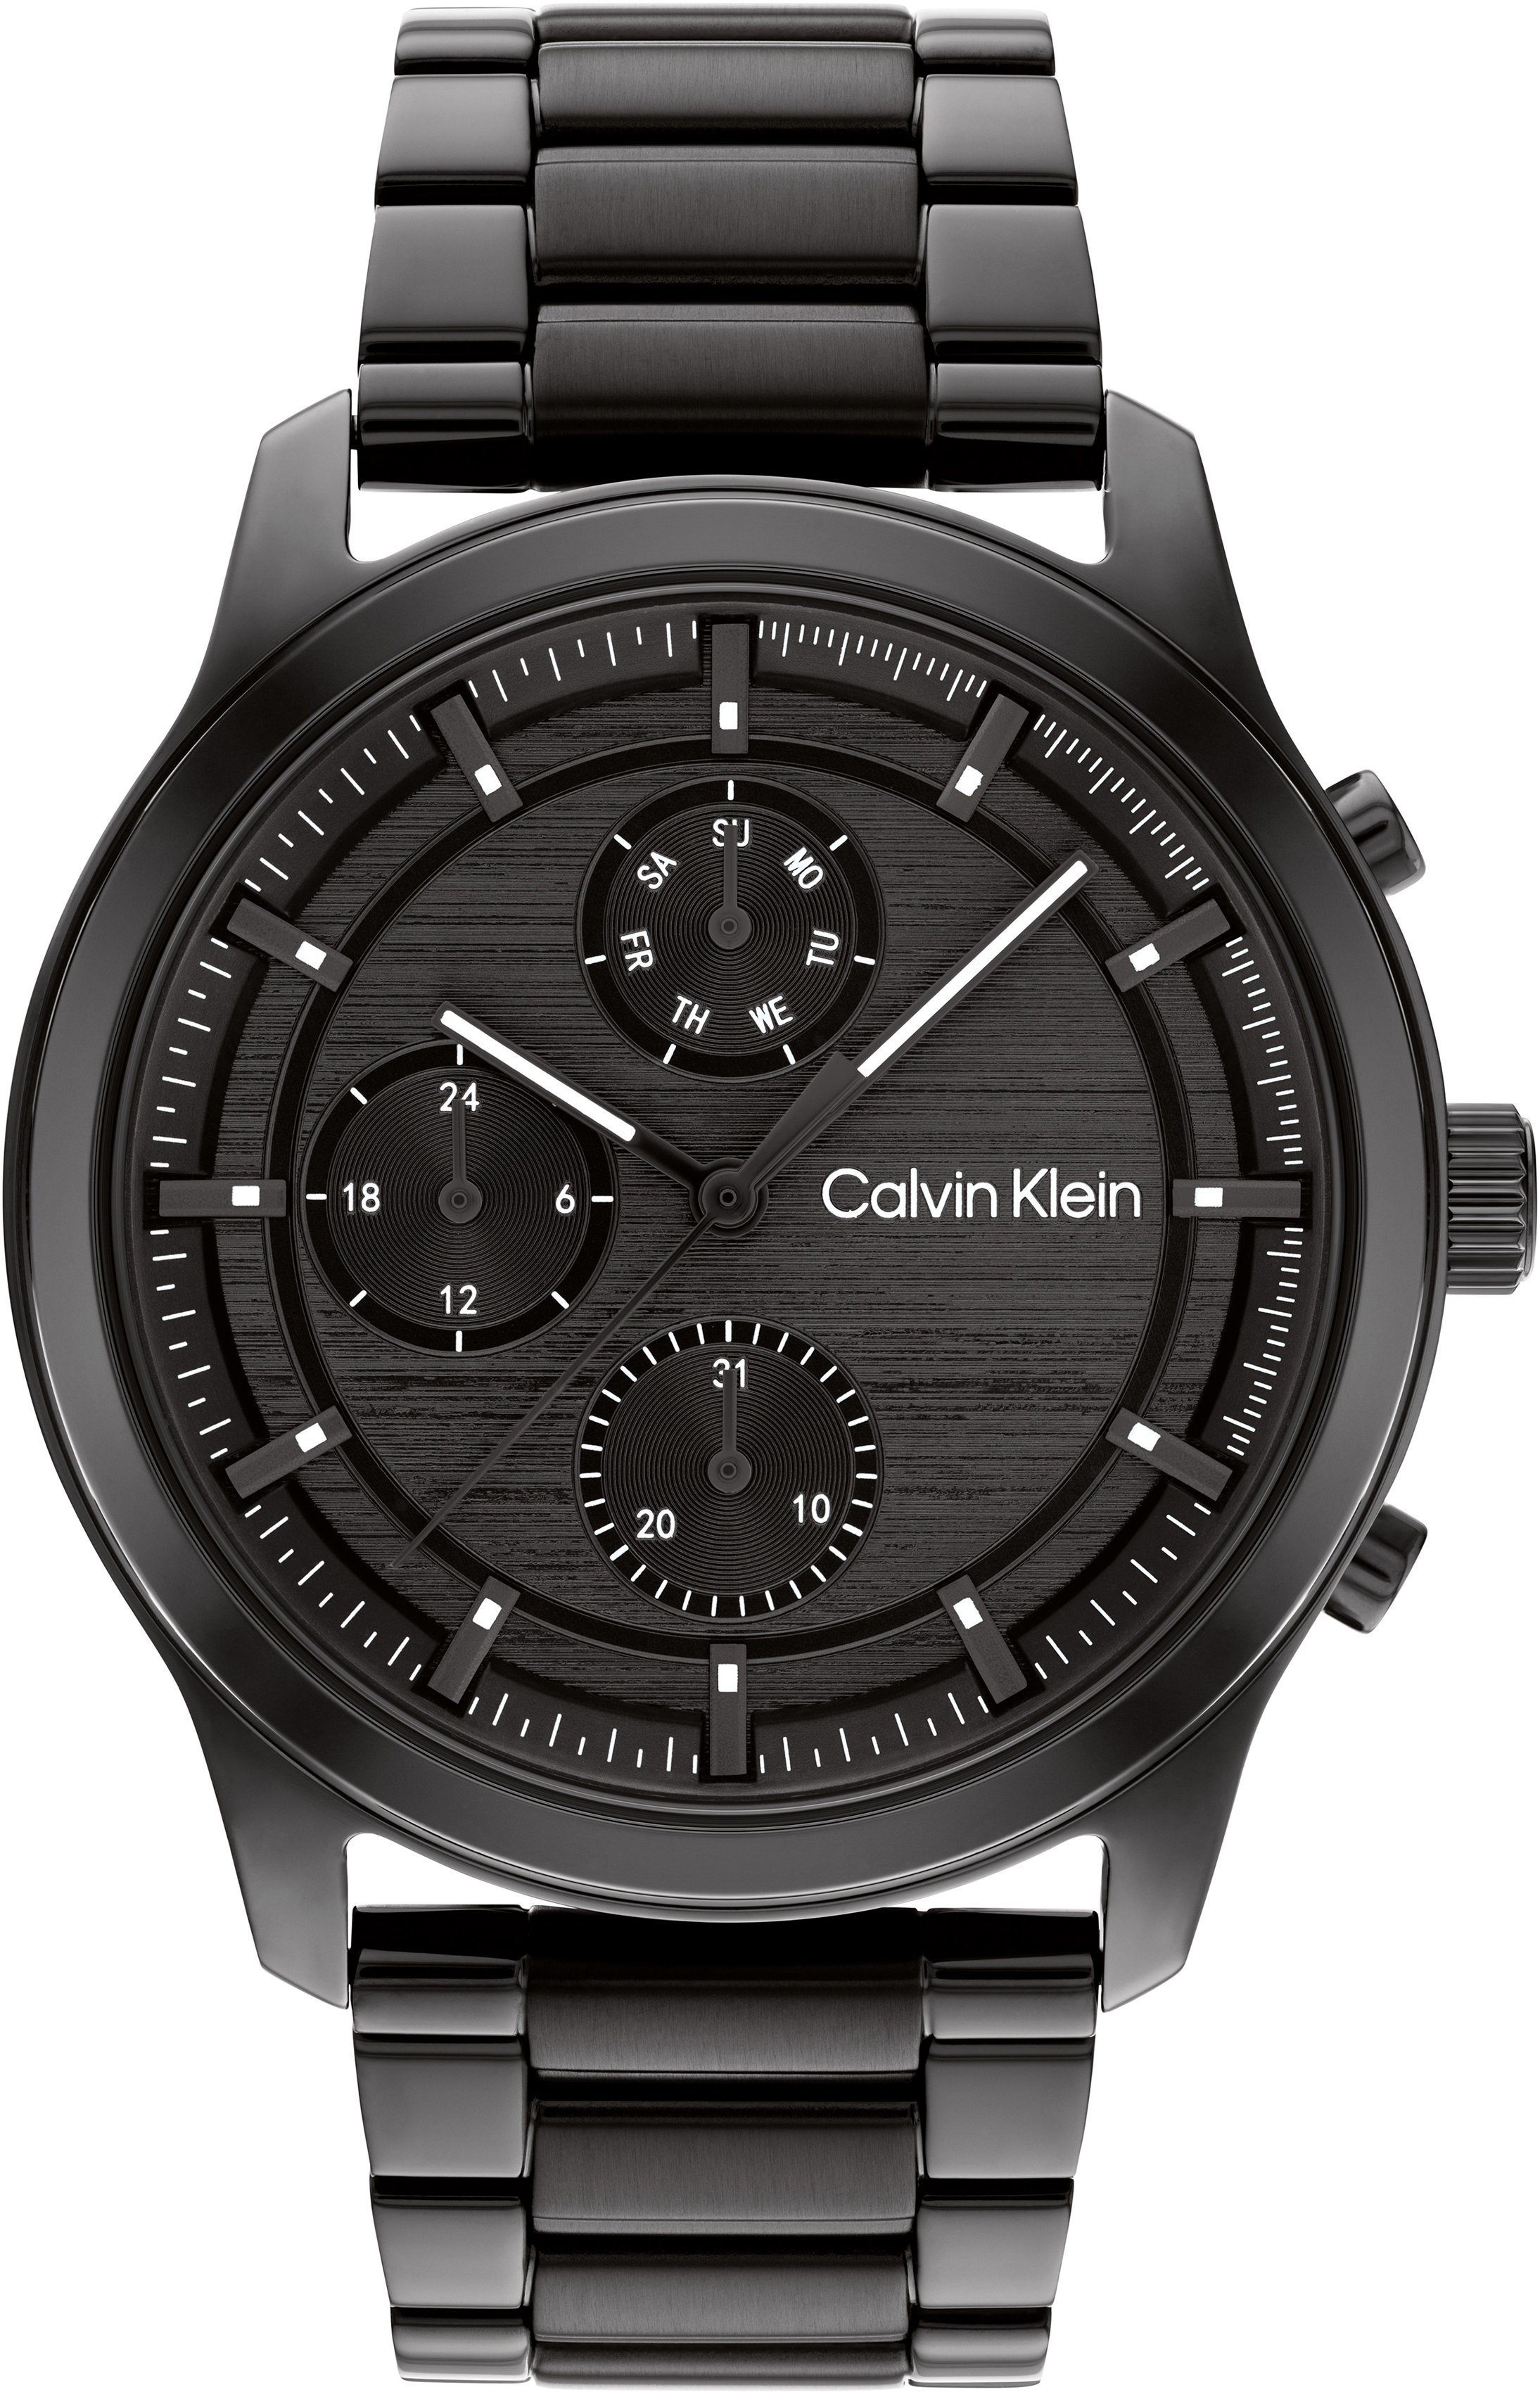 Calvin Klein Multifunktionsuhr SPORT MULTI-FUNCTION, 25200209, Quarzuhr, Armbanduhr, Herrenuhr, Datum, 12/24-Stunden-Anzeige